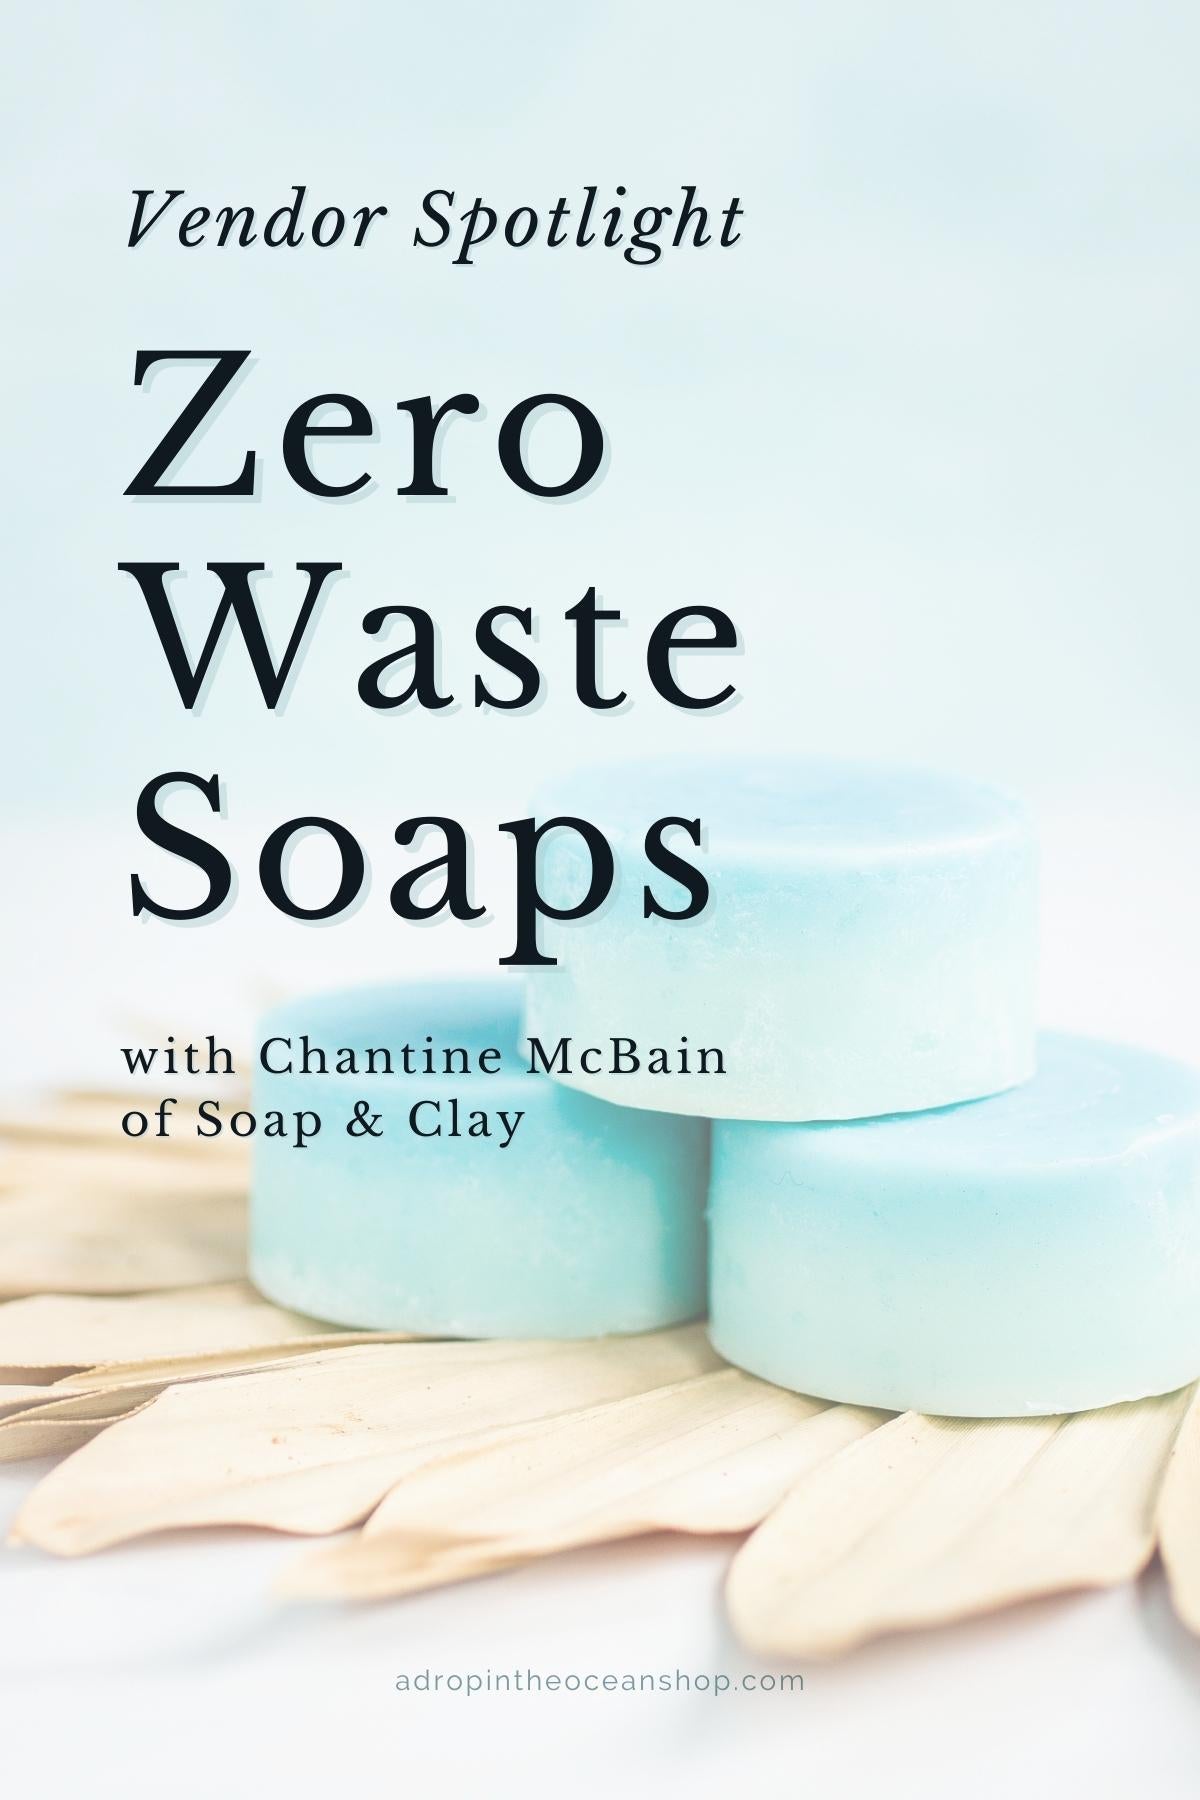 A Drop in the Ocean Vendor Spotlight: Zero Waste Soaps with Soap & Clay